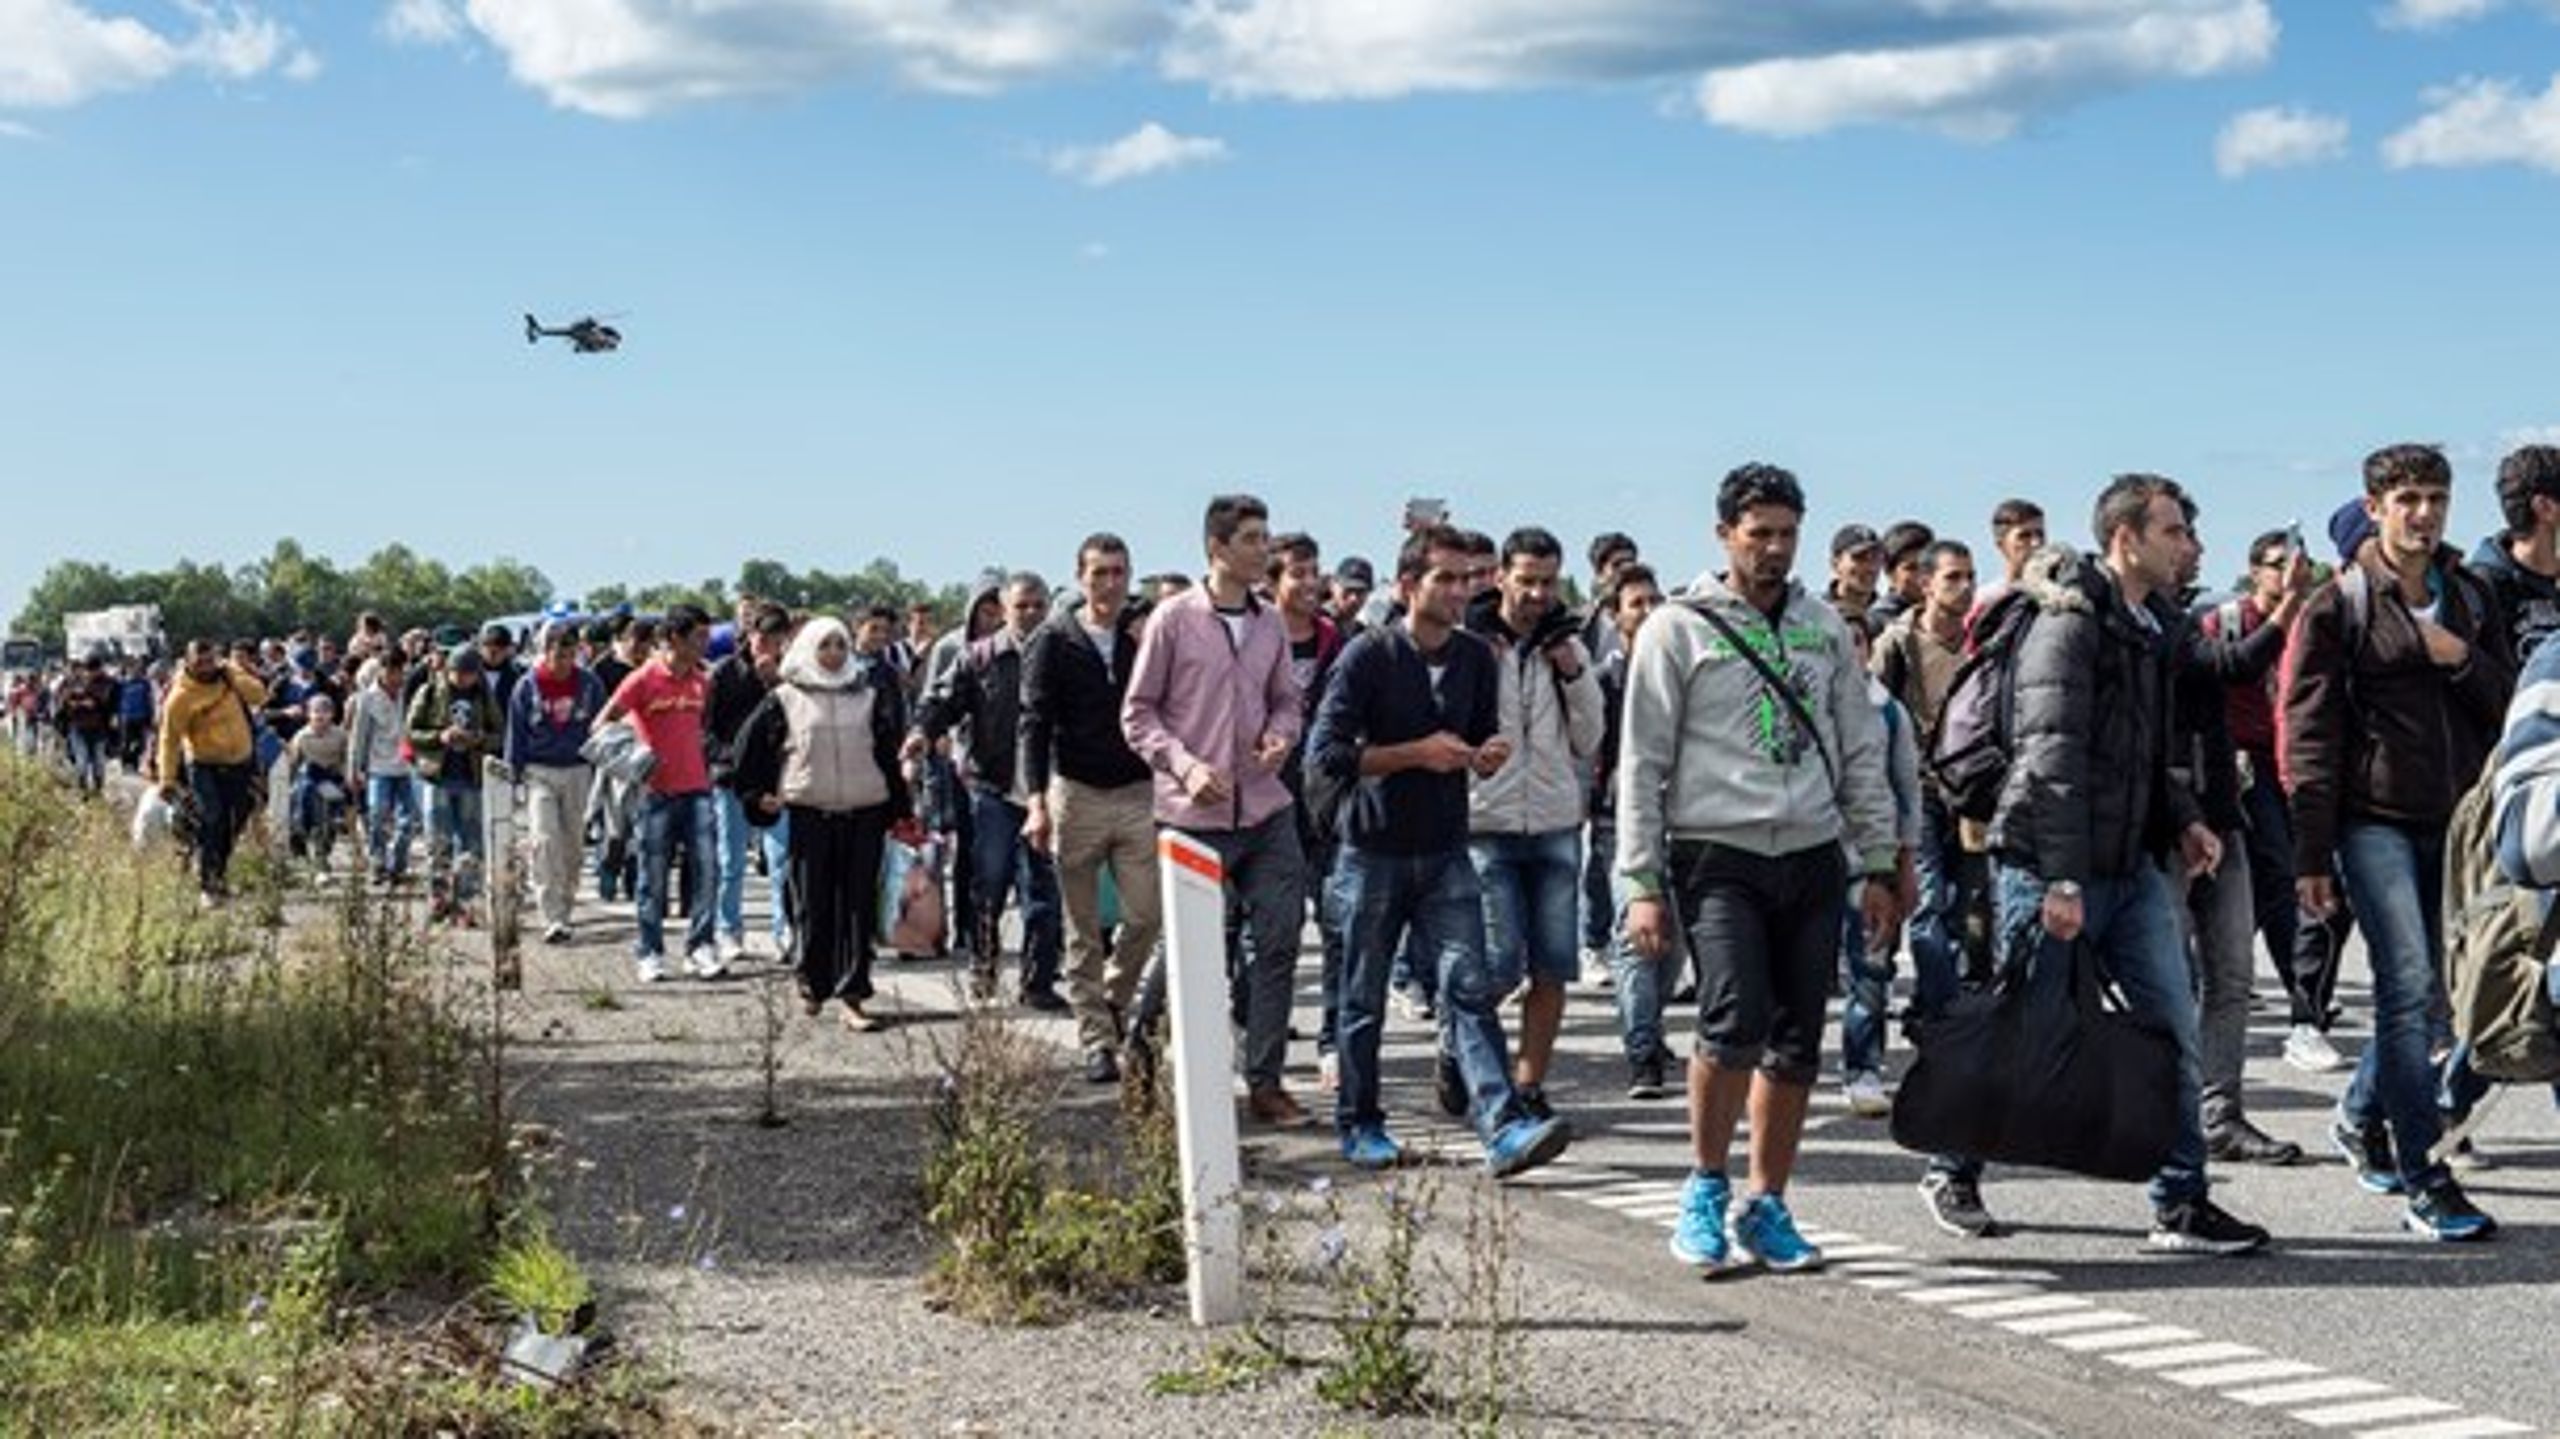 Ca. 2,7 milliarder kroner af den danske udviklingsbistand gik til at betale for modtagelse af det rekordhøje antal asylansøgere, som i 2015 var på ca. 21.000 personer.